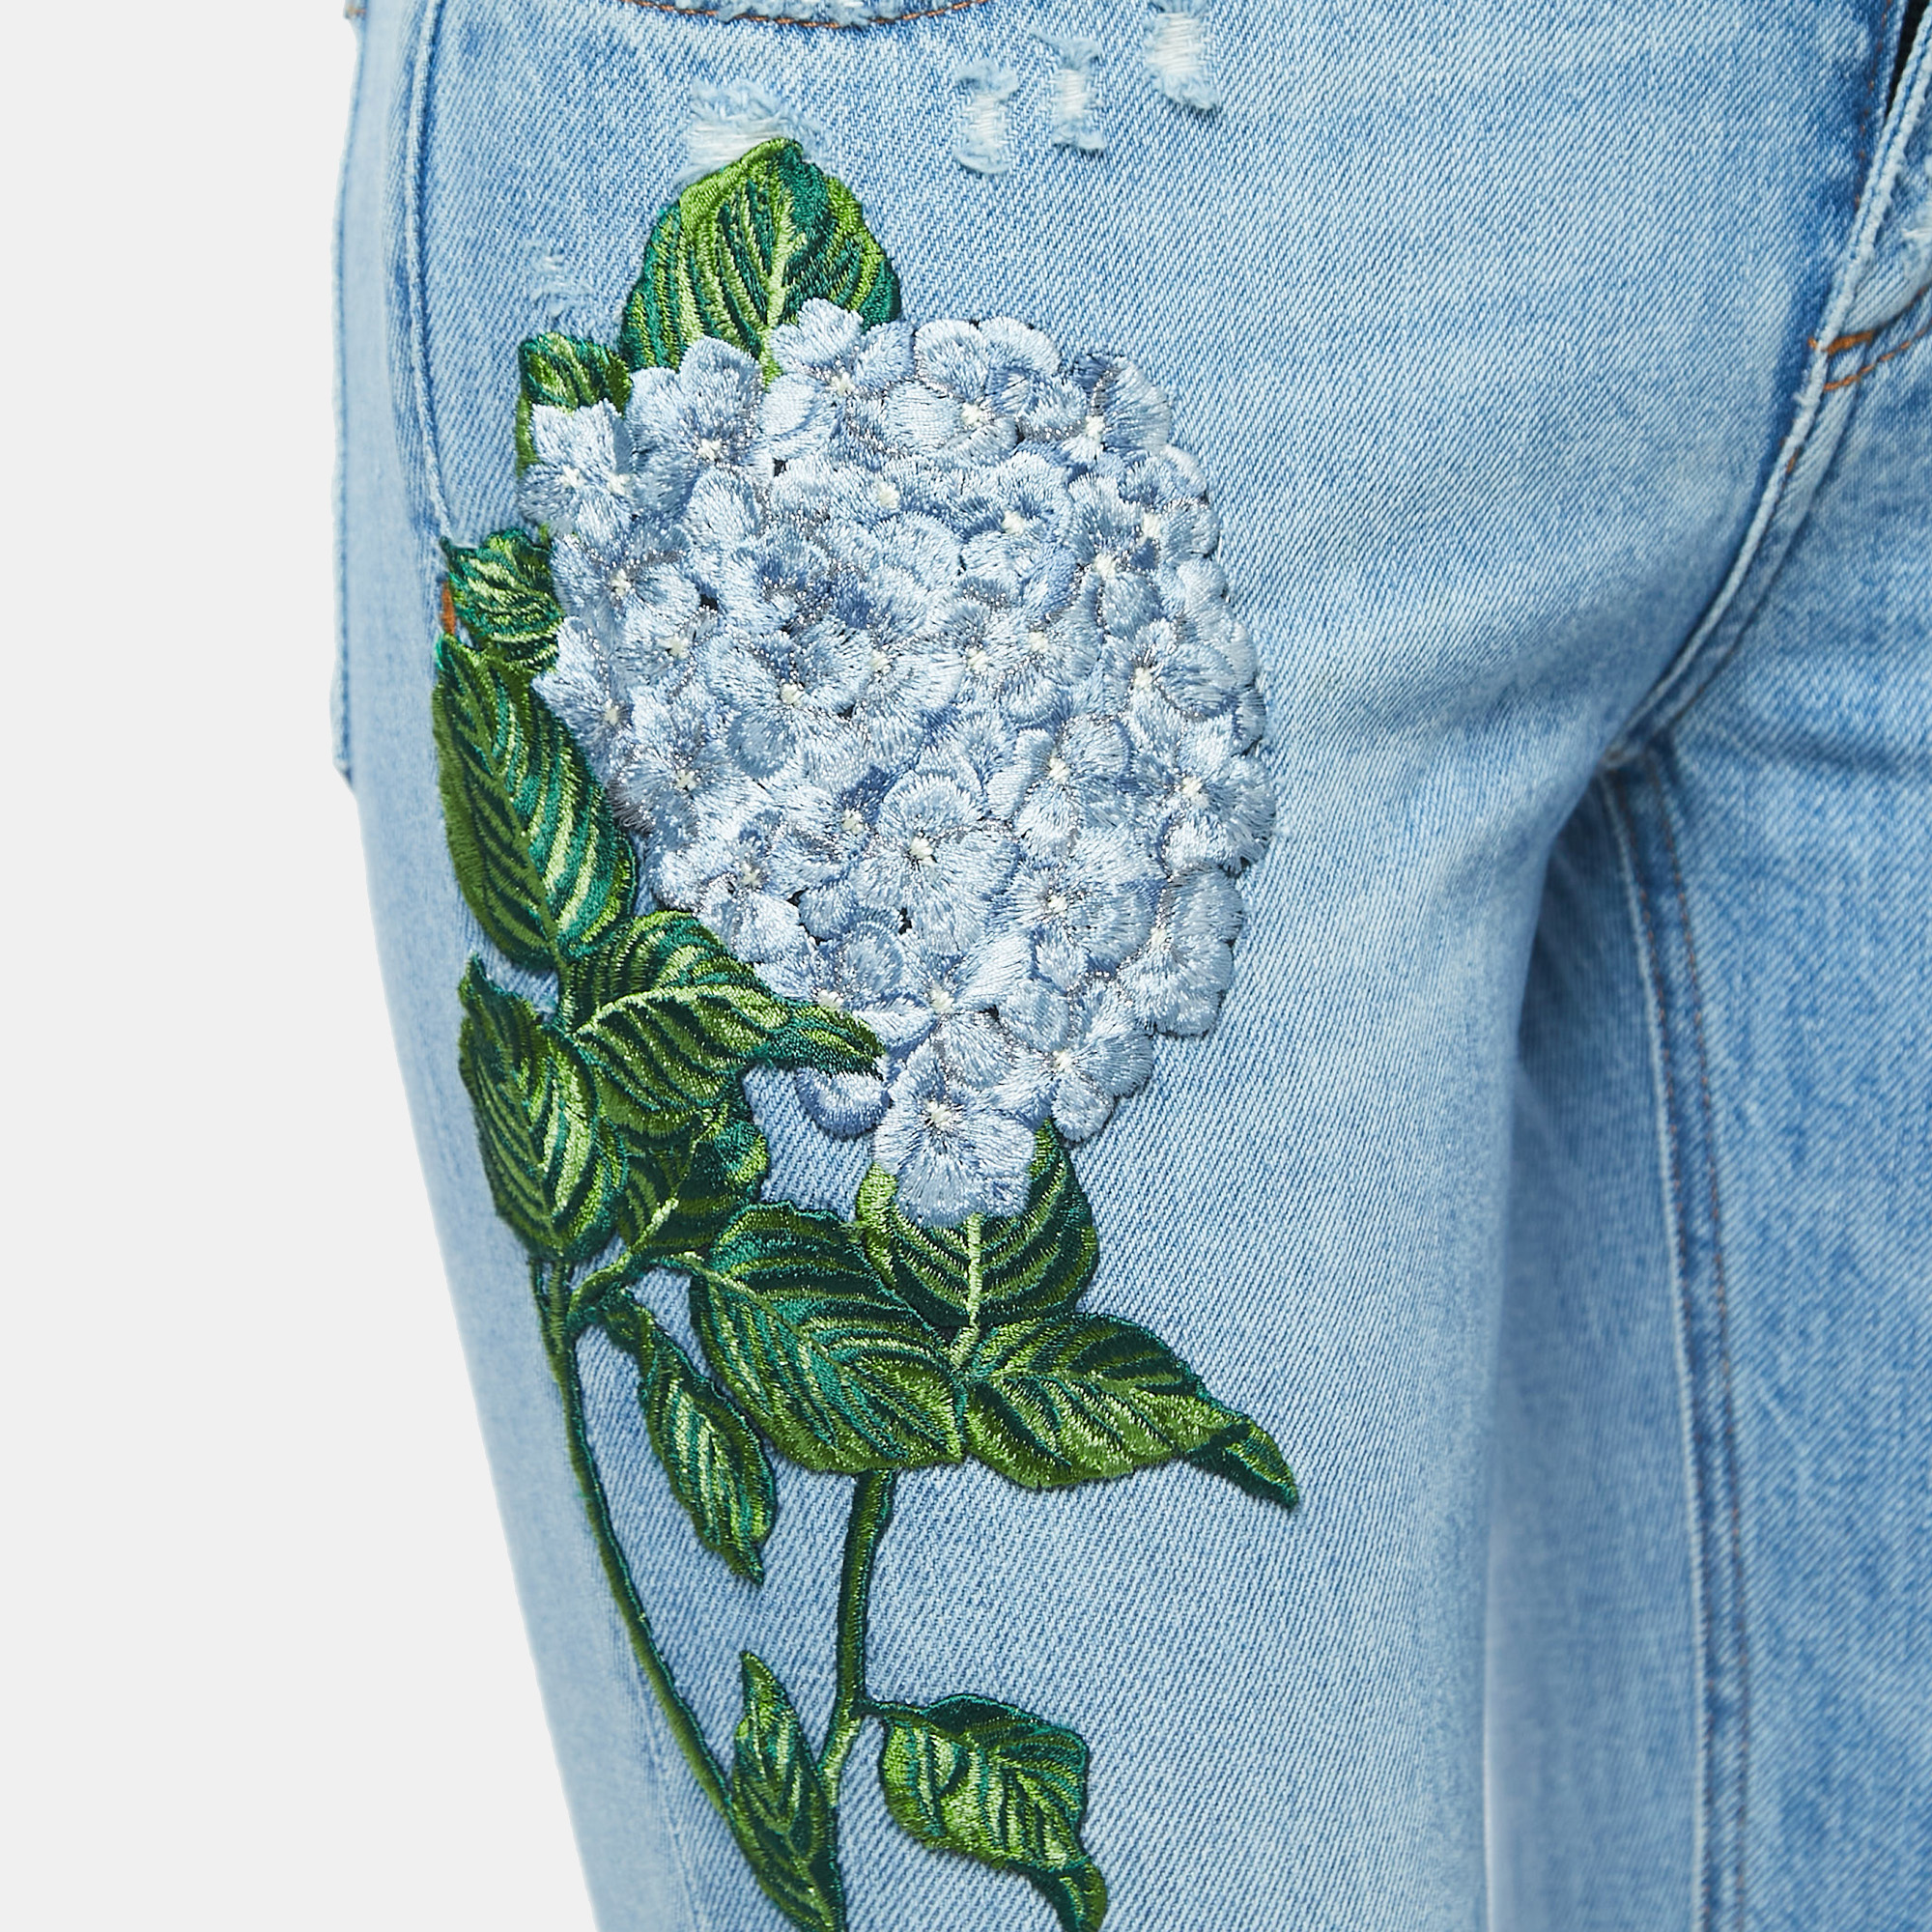 Dolce & Gabbana Blue Embroidered Denim Pretty Jeans S Waist 28